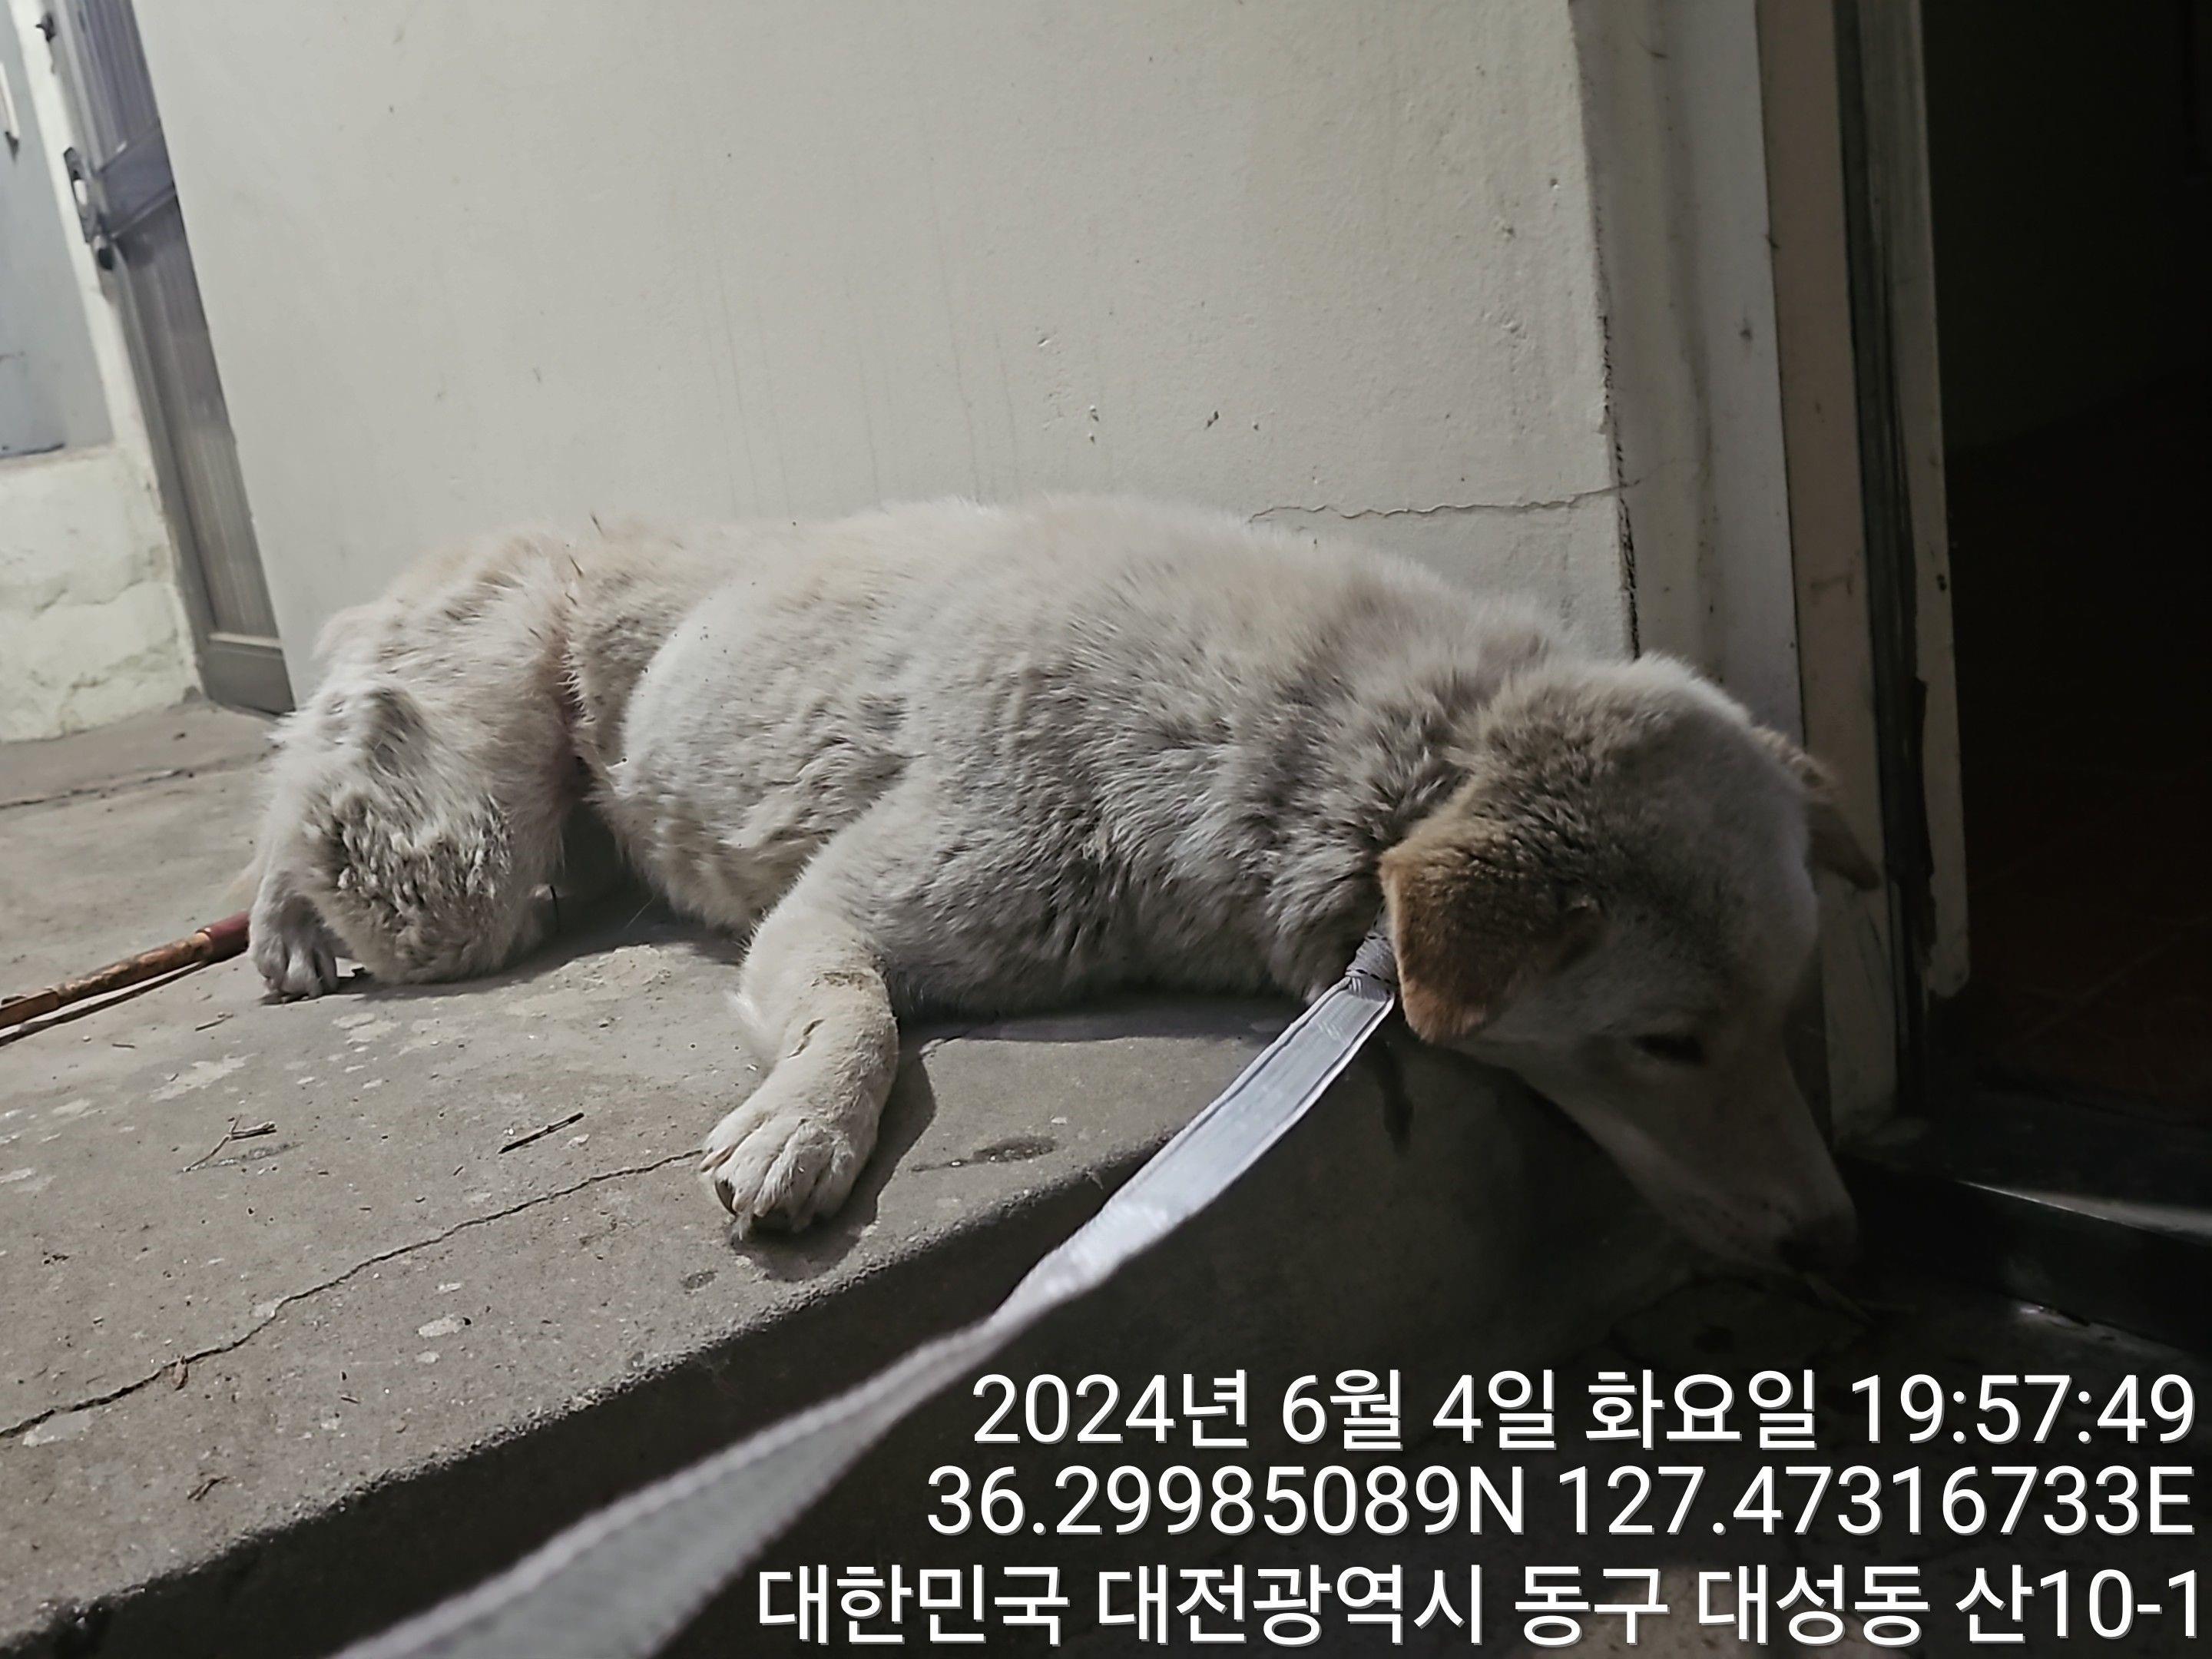 공고 번호가 대전-동구-2024-00154인 믹스견 동물 사진